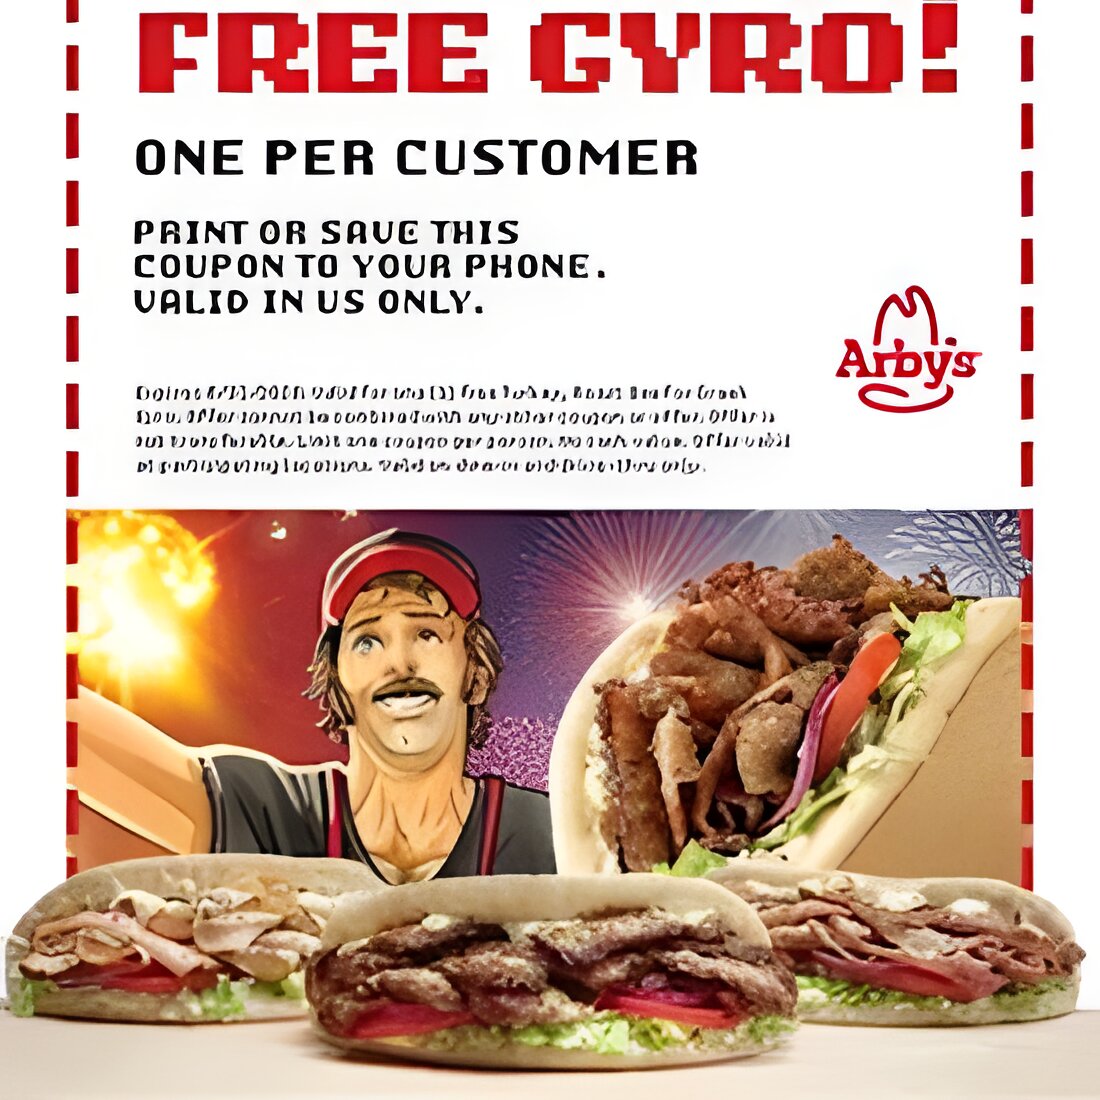 Free Arby's Turkey, Roast Beef or Greek Gyro